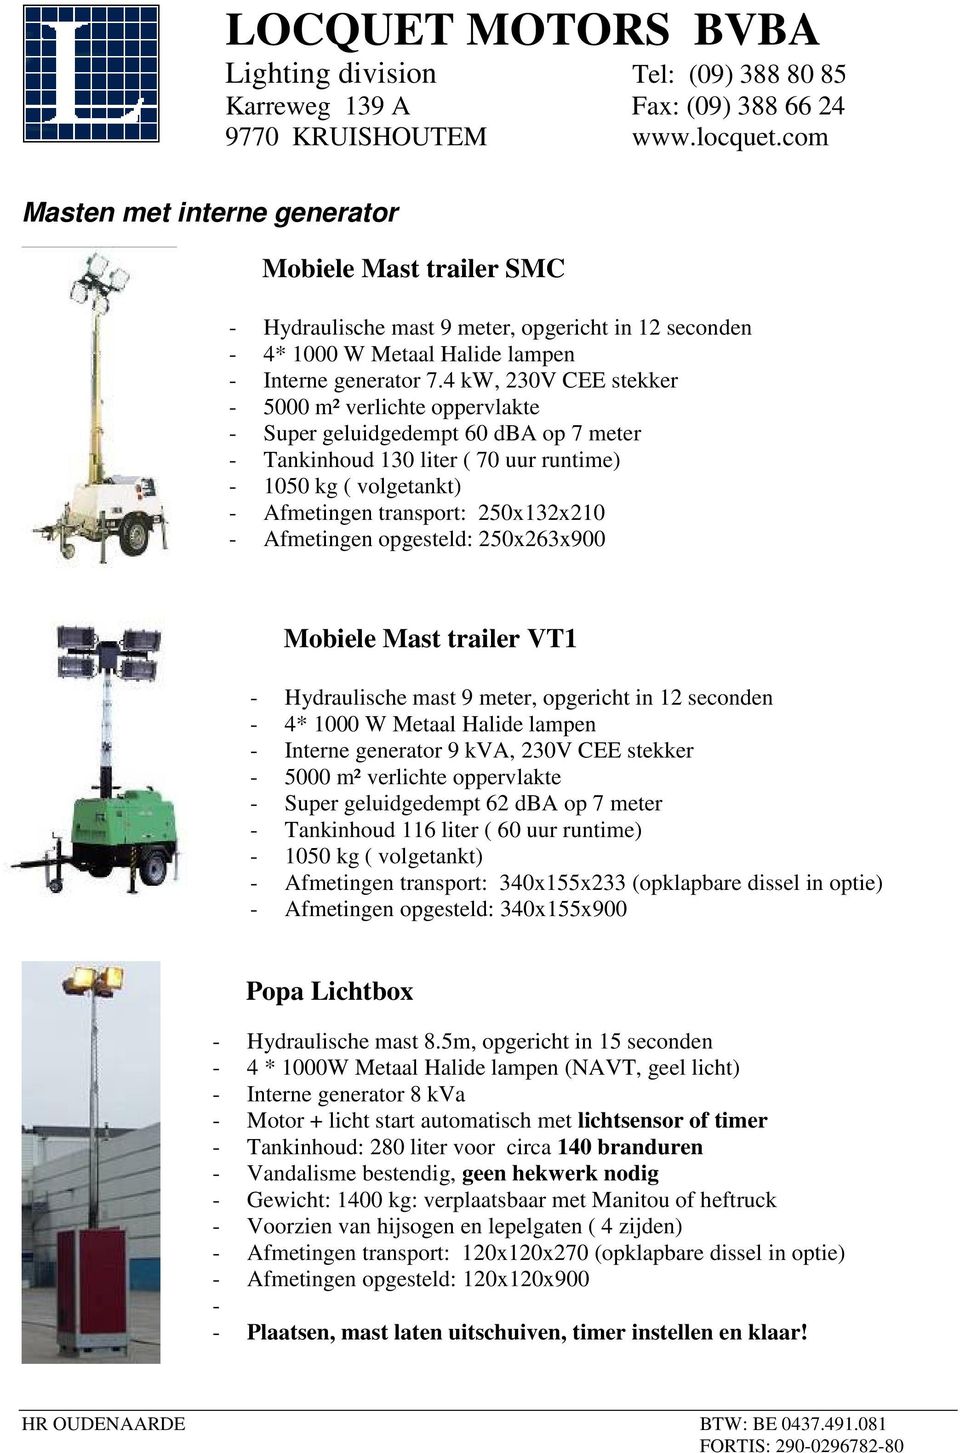 Afmetingen opgesteld: 250x263x900 Mobiele Mast trailer VT1 - Hydraulische mast 9 meter, opgericht in 12 seconden - 4* 1000 W Metaal Halide lampen - Interne generator 9 kva, 230V CEE stekker - 5000 m²